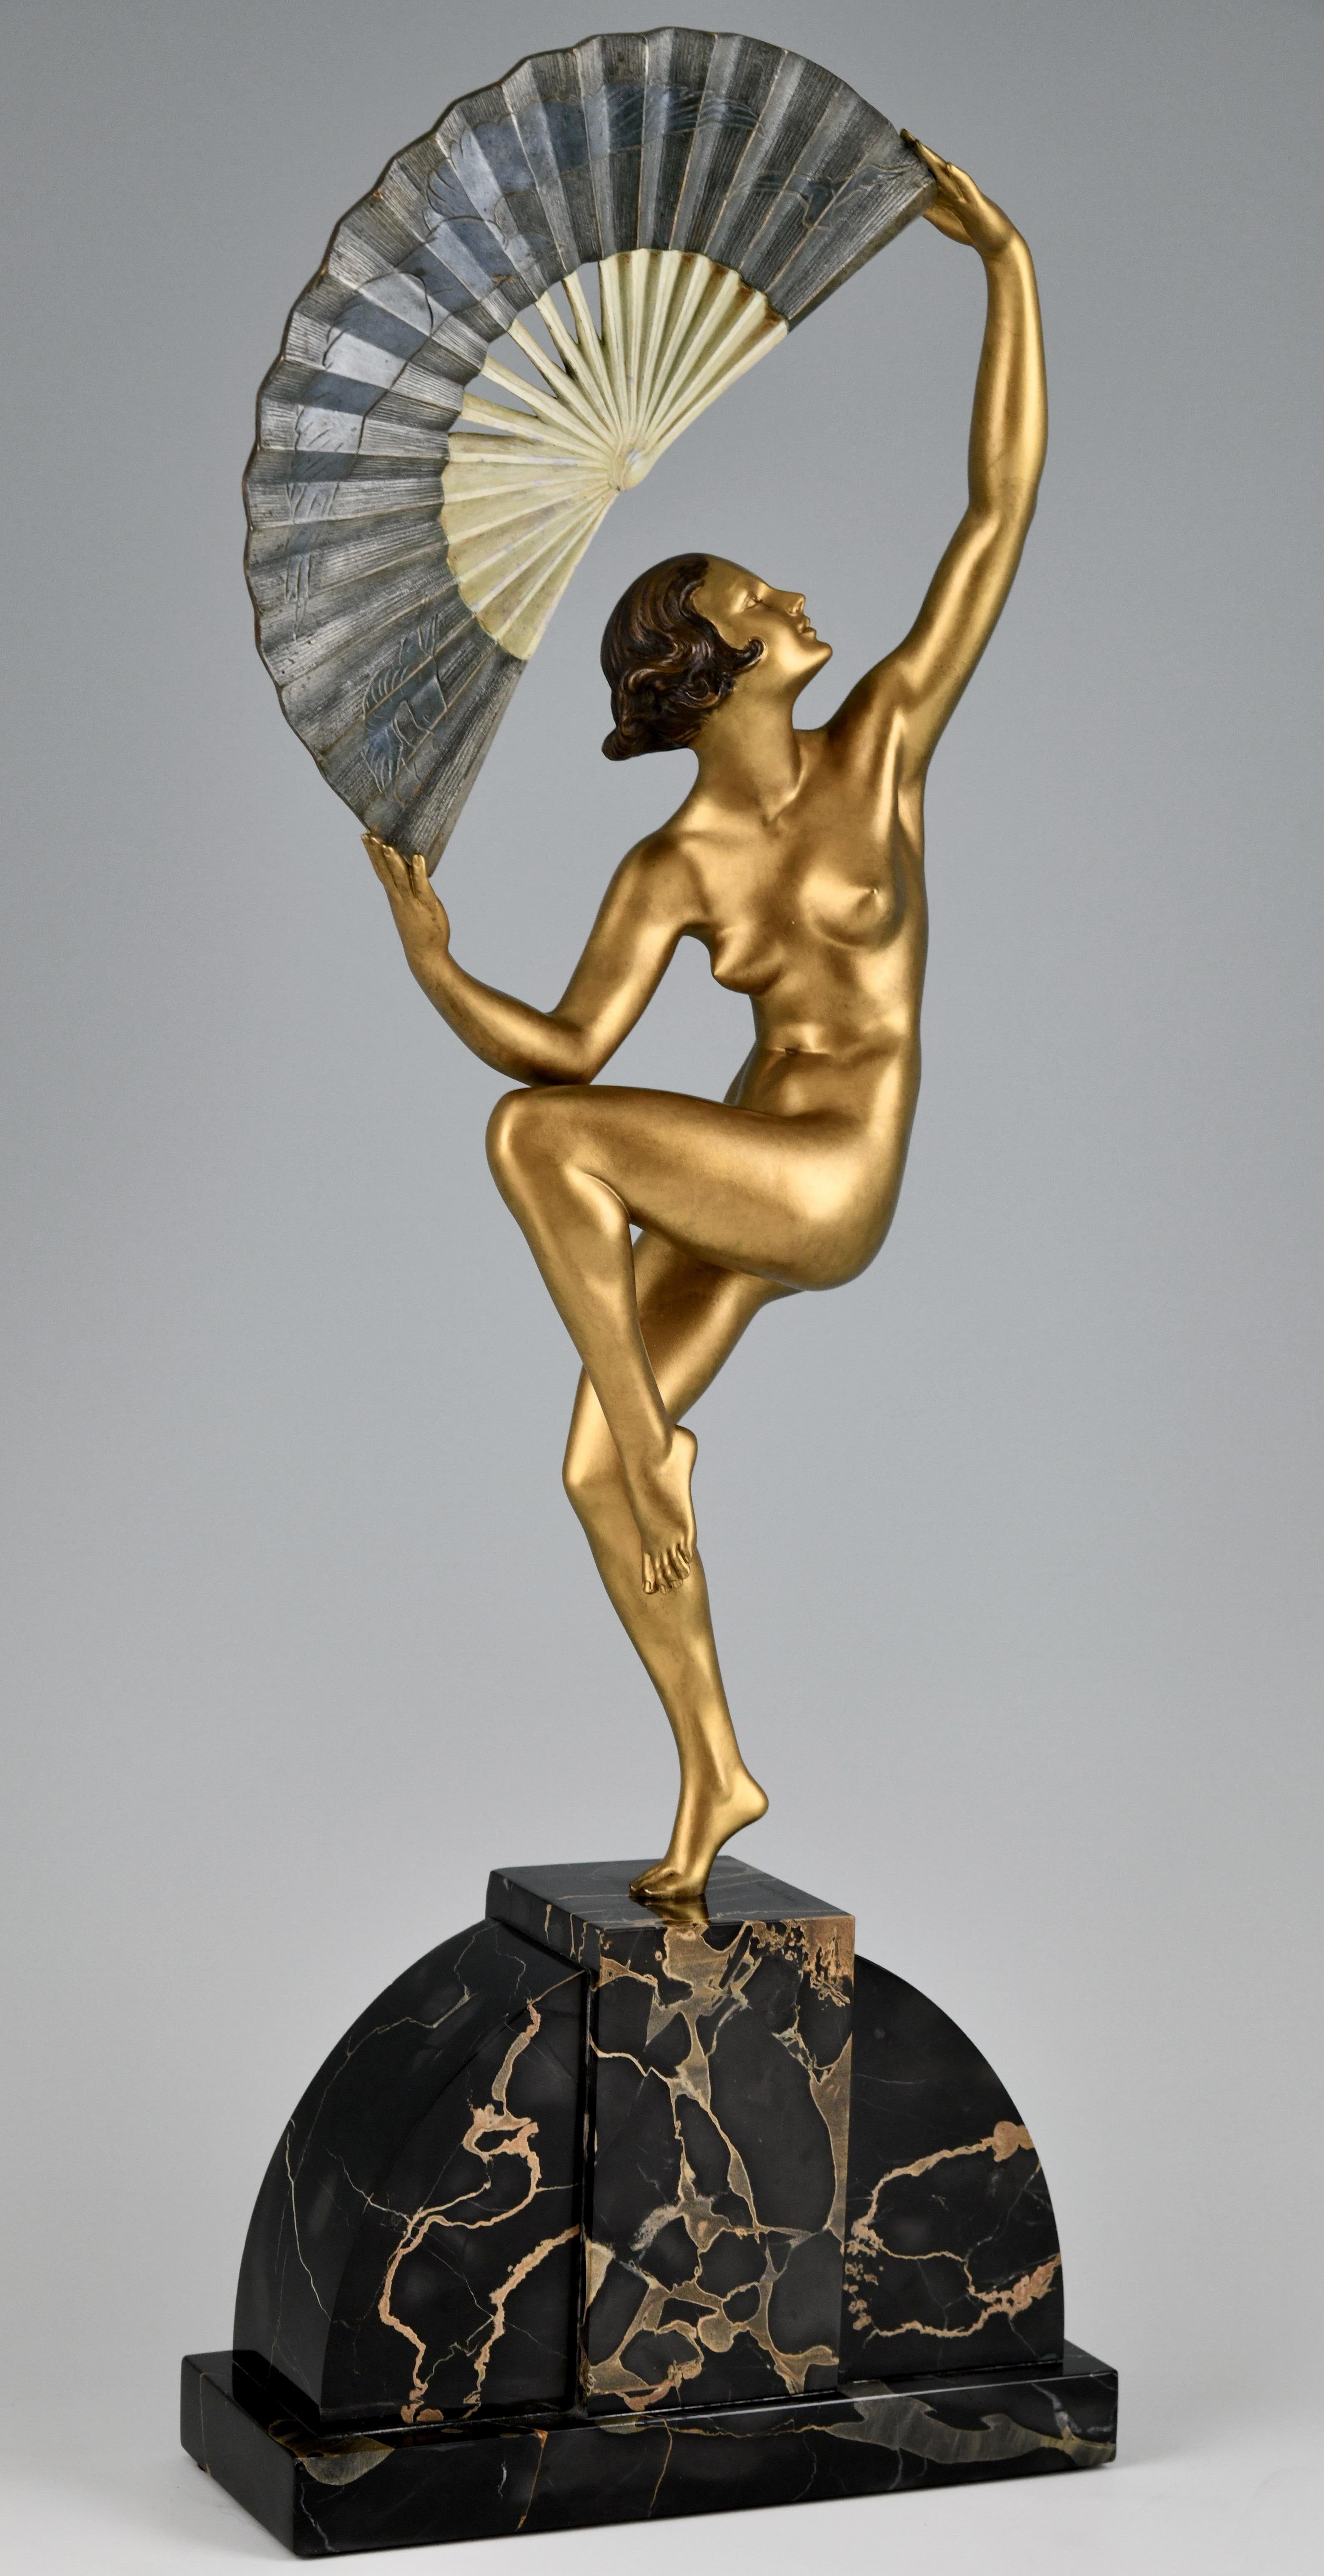 Sculpture en bronze Art déco, danseuse nue à l'éventail.
Sculpture en bronze patiné représentant un nu dansant, debout sur un pied, tenant un éventail incisé d'un motif d'oiseaux.
Le bronze est signé par Marcel André Bouraine, avec la signature des